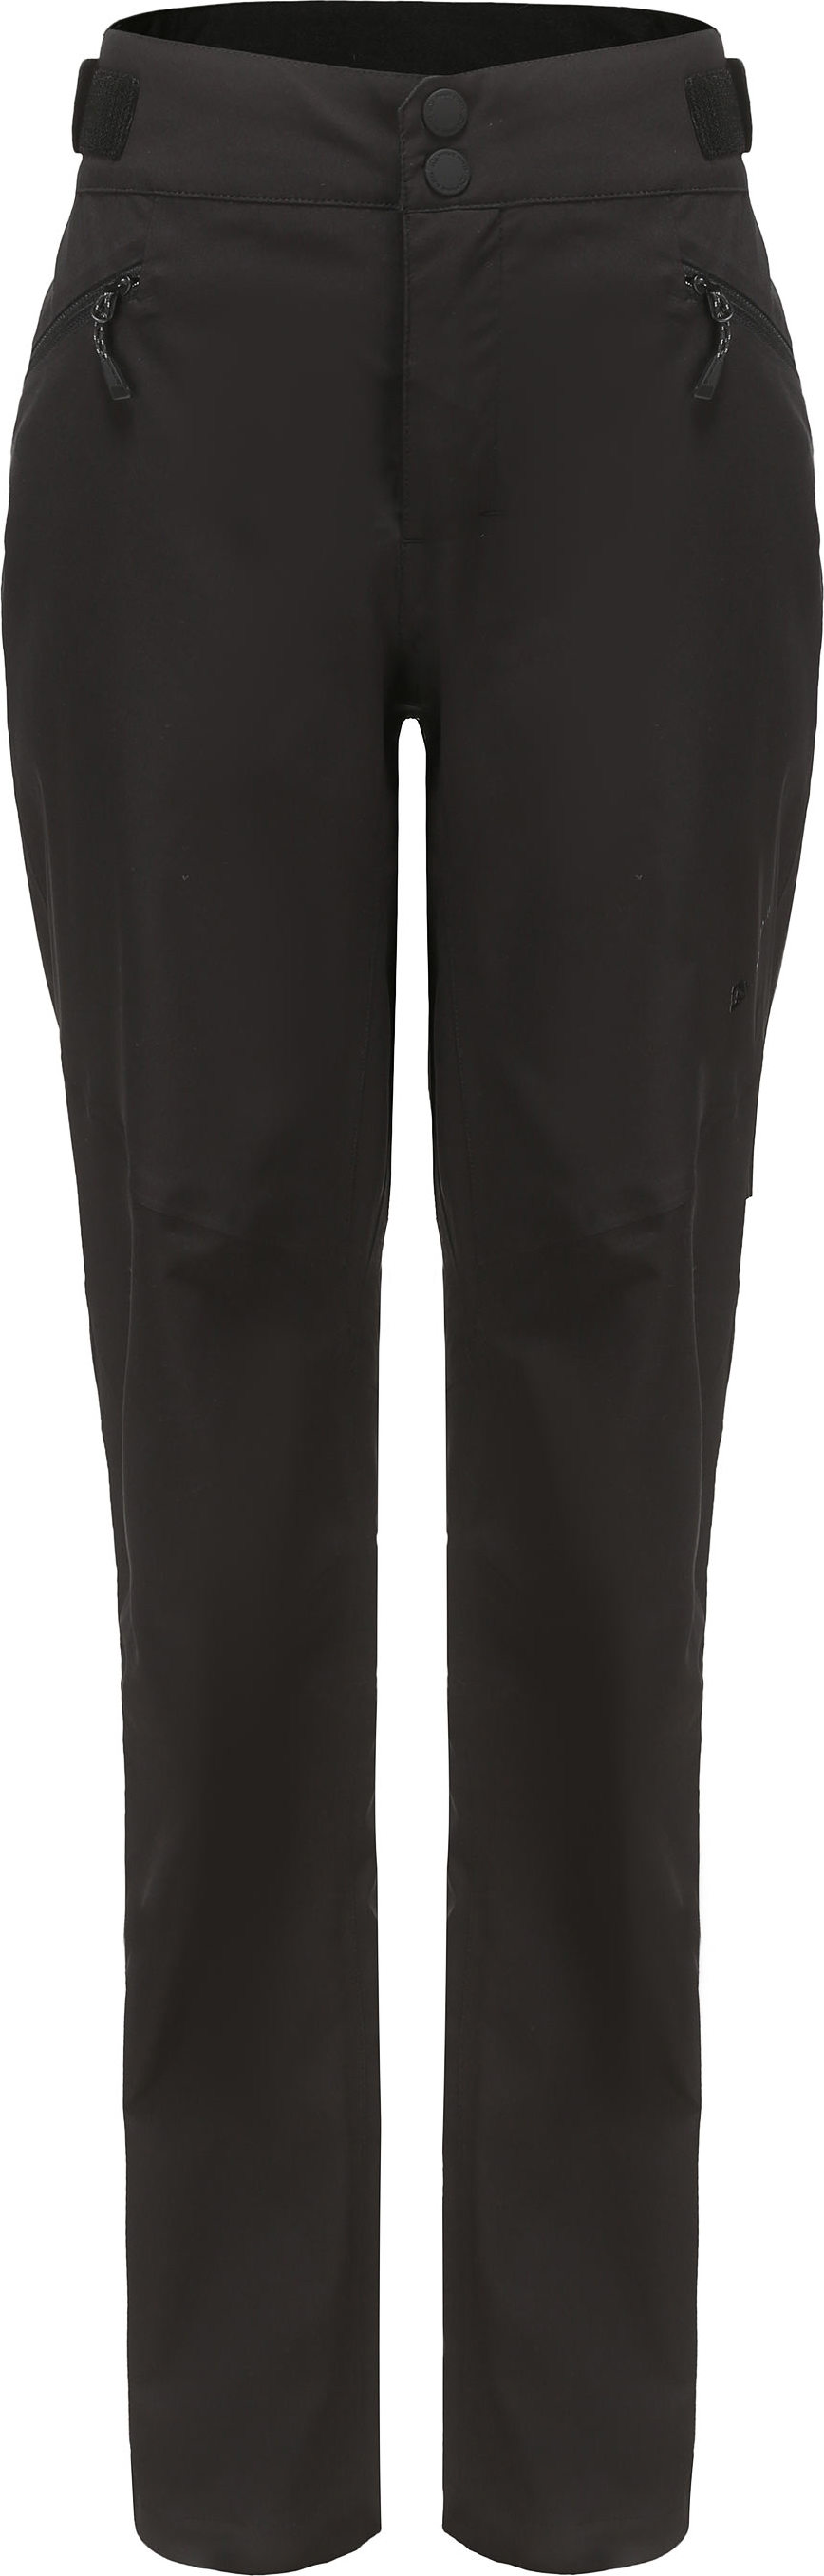 Dámské outdoorové kalhoty ALPINE PRO Foika černé Velikost: 46